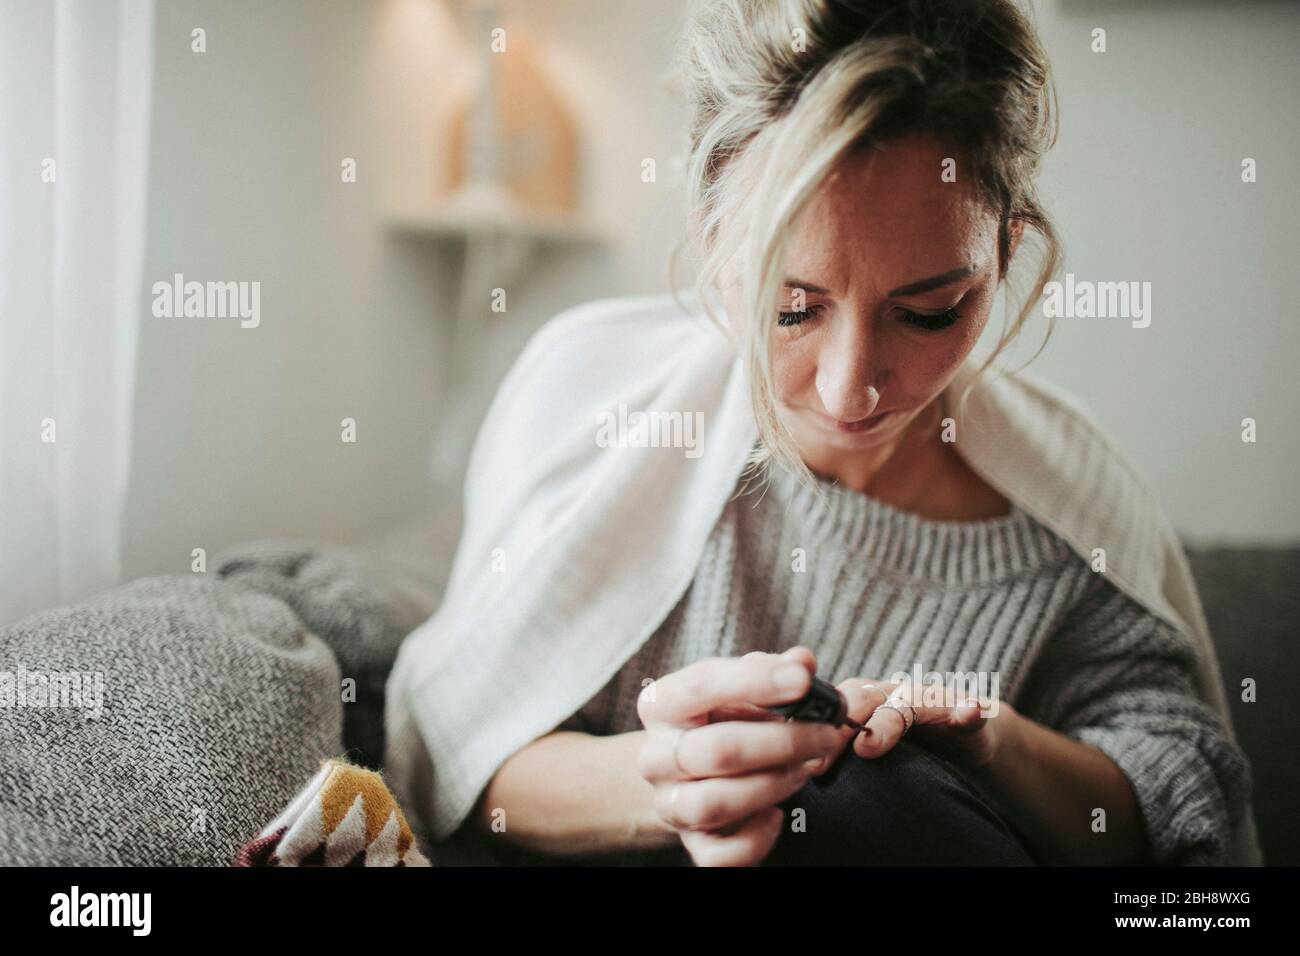 Frau sitzt entspannt auf der Couch, lackiert sich die Fingernägel Foto Stock